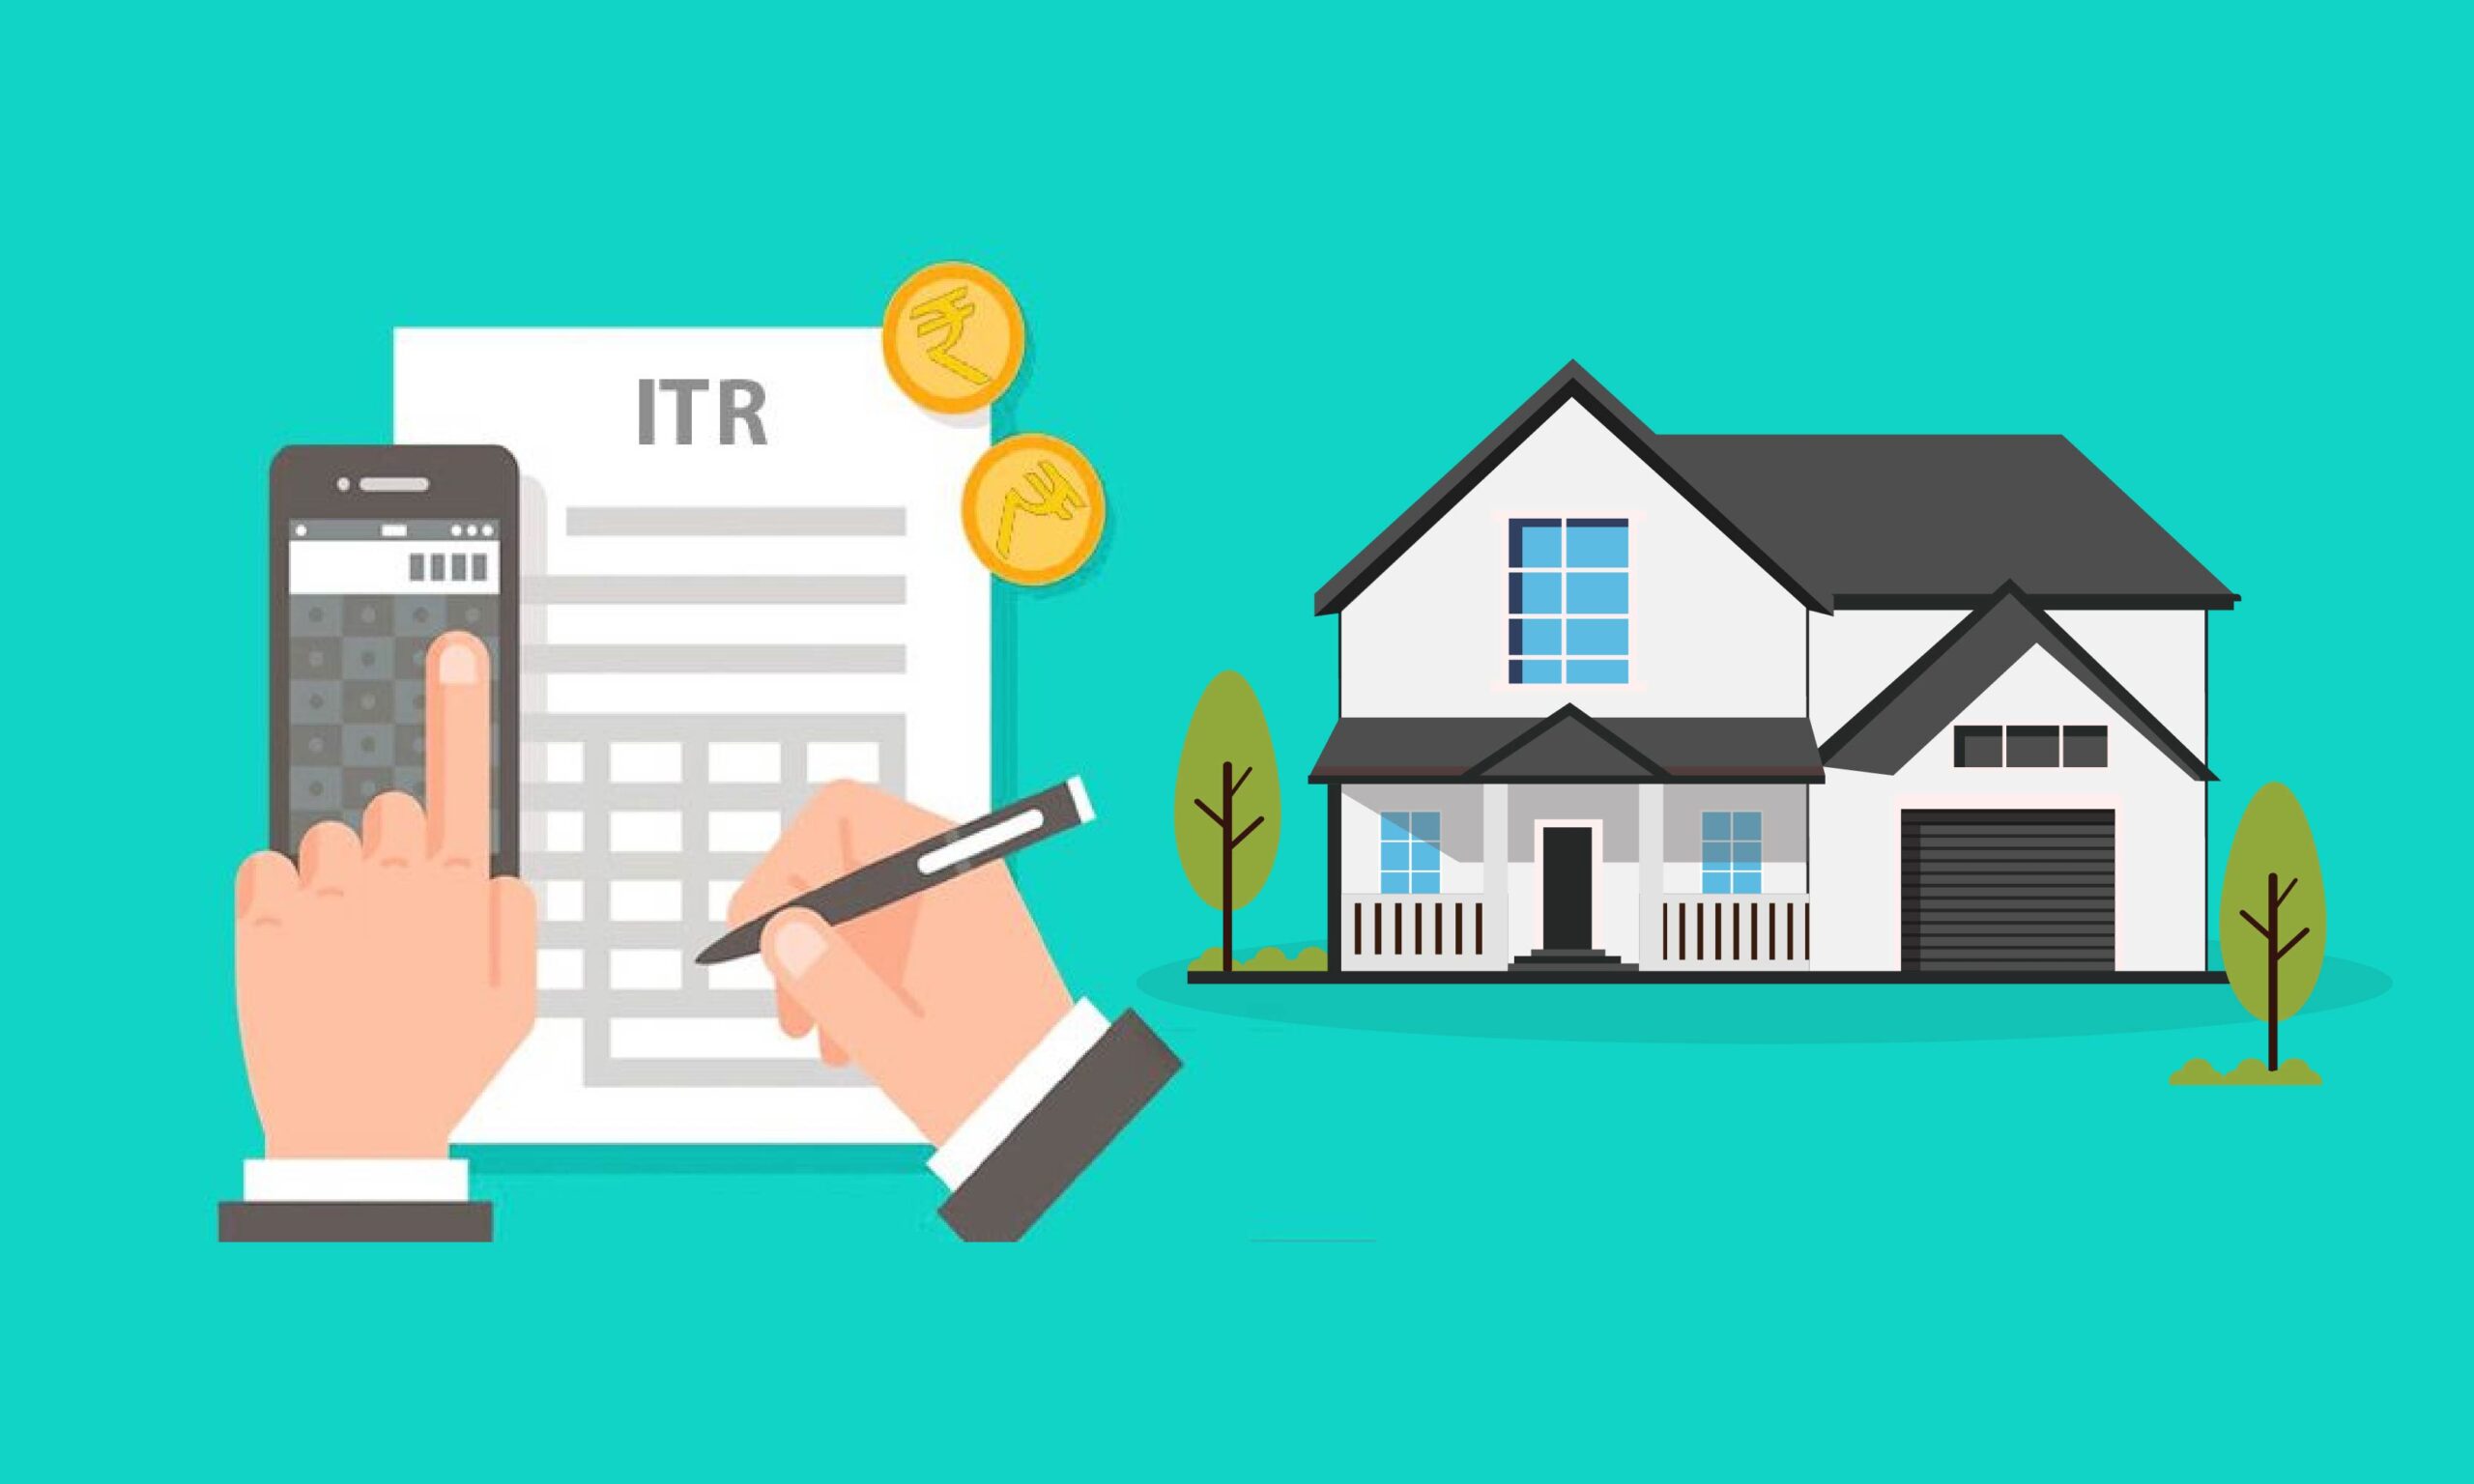 ITR filing for home loan